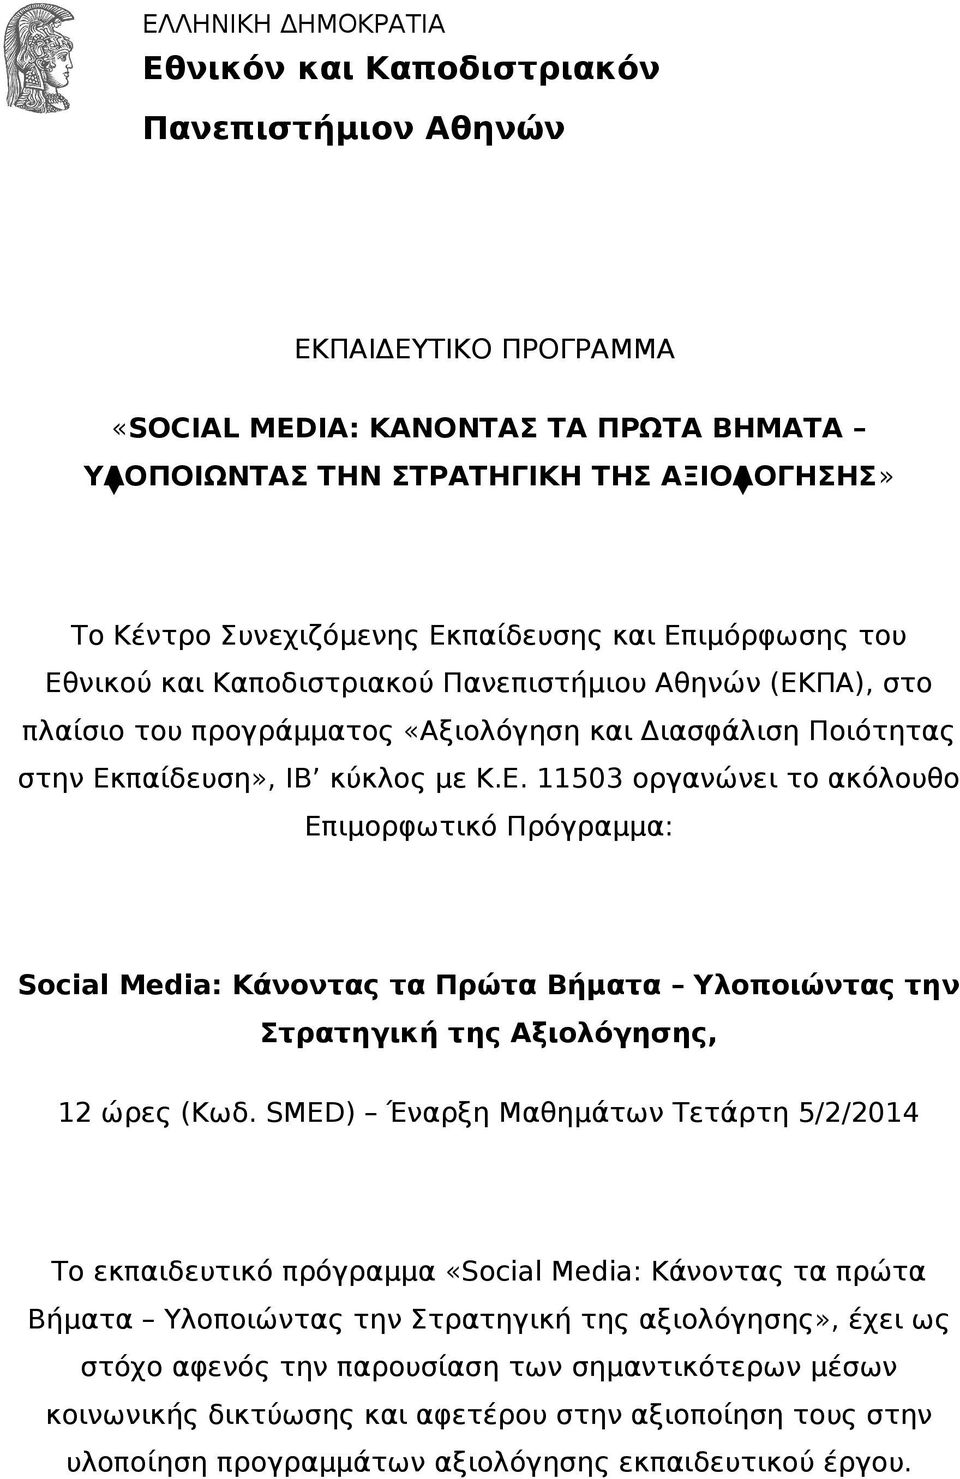 SMED) Έναρξη Μαθημάτων Τετάρτη 5/2/2014 Το εκπαιδευτικό πρόγραμμα «Social Media: Κάνοντας τα πρώτα Βήματα Υλοποιώντας την Στρατηγική της αξιολόγησης», έχει ως στόχο αφενός την παρουσίαση των